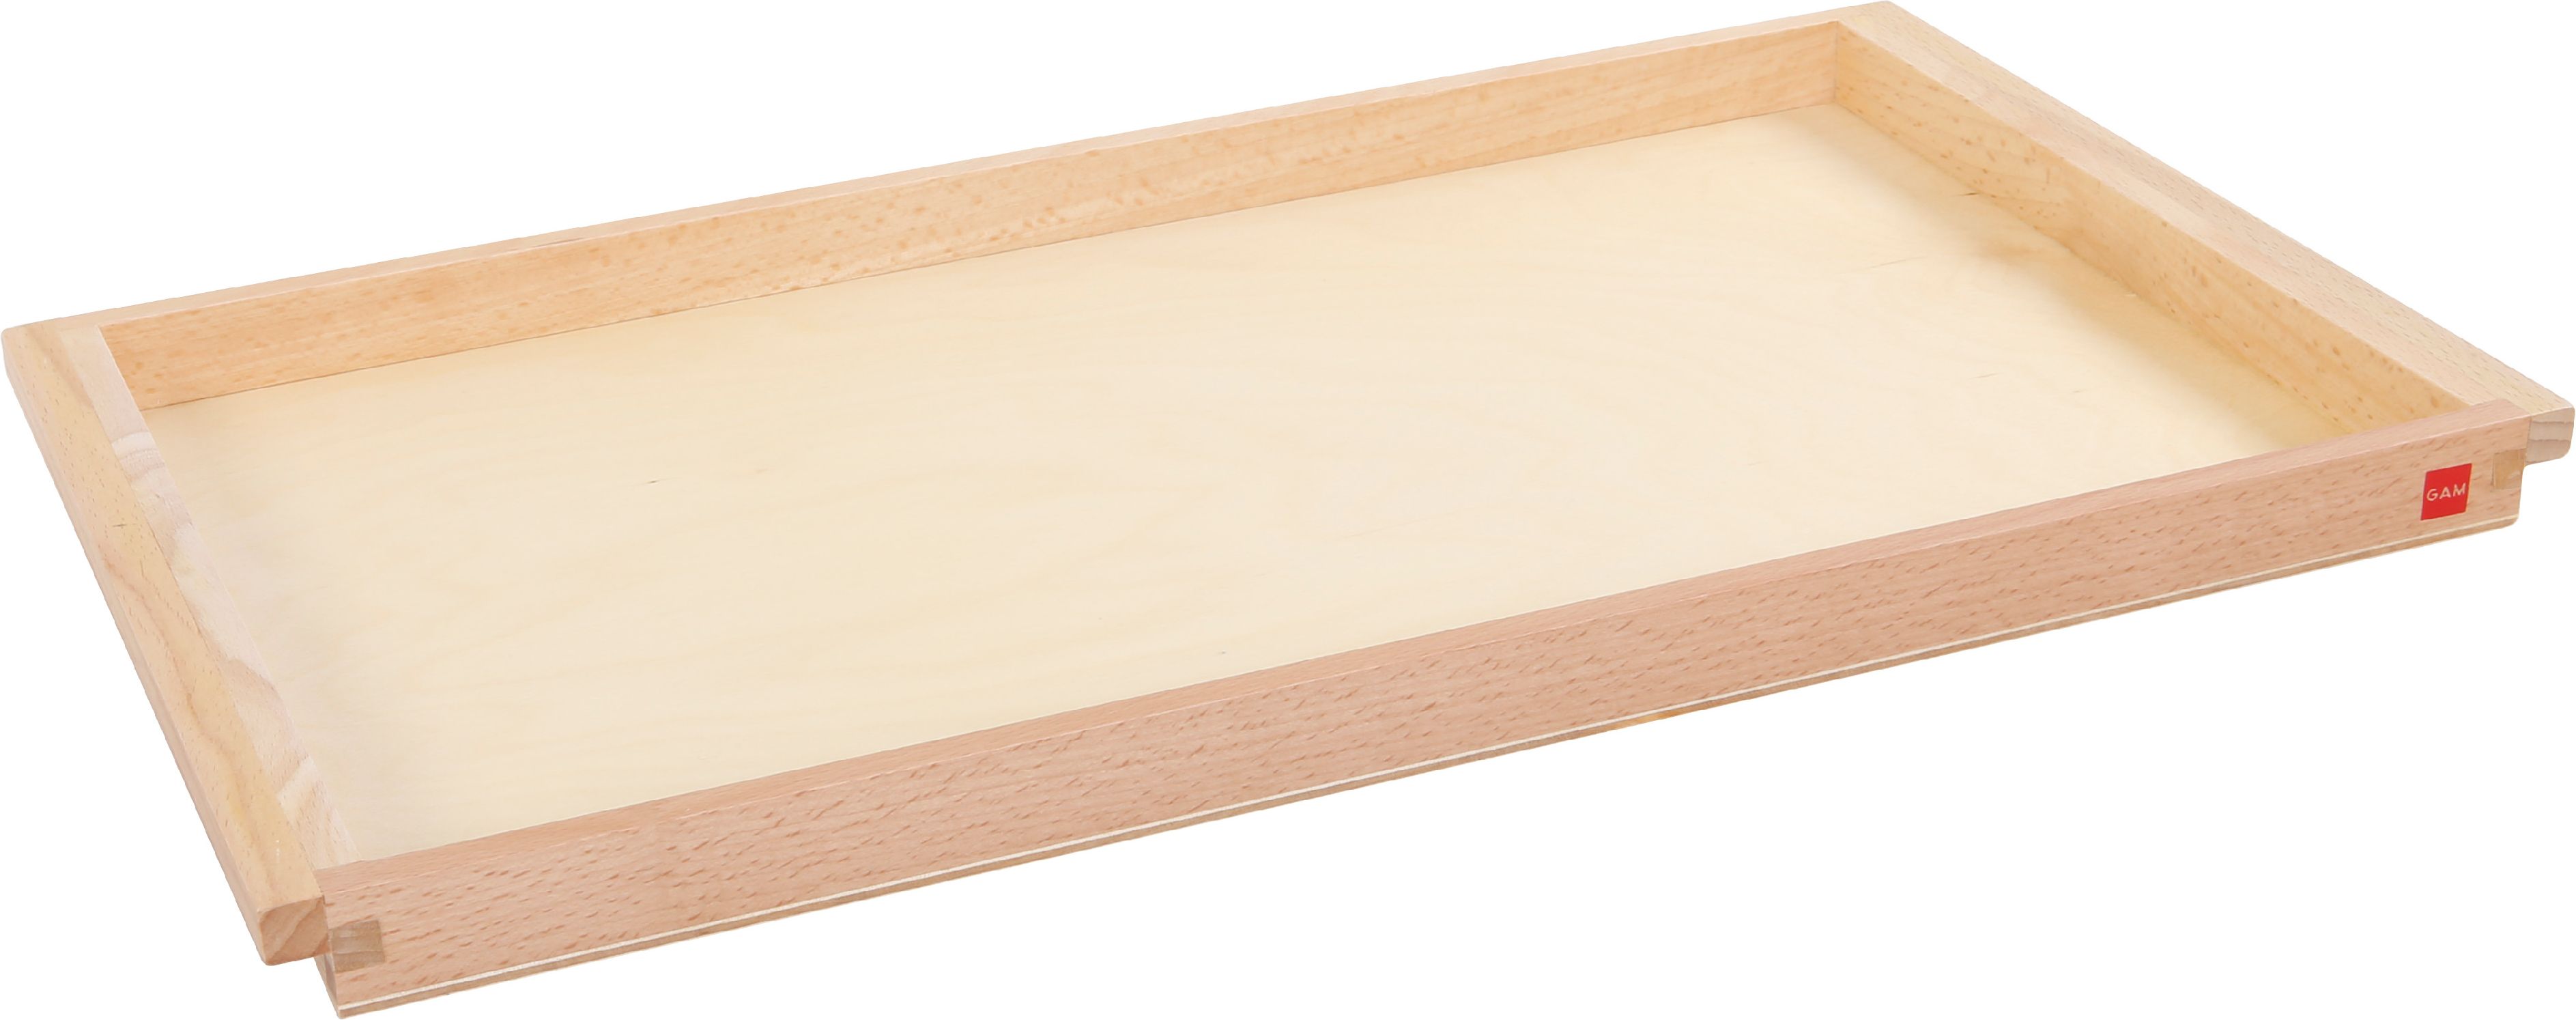 Wooden Tray, Large, 25 X 43 X 2 Cm - obrázek 1